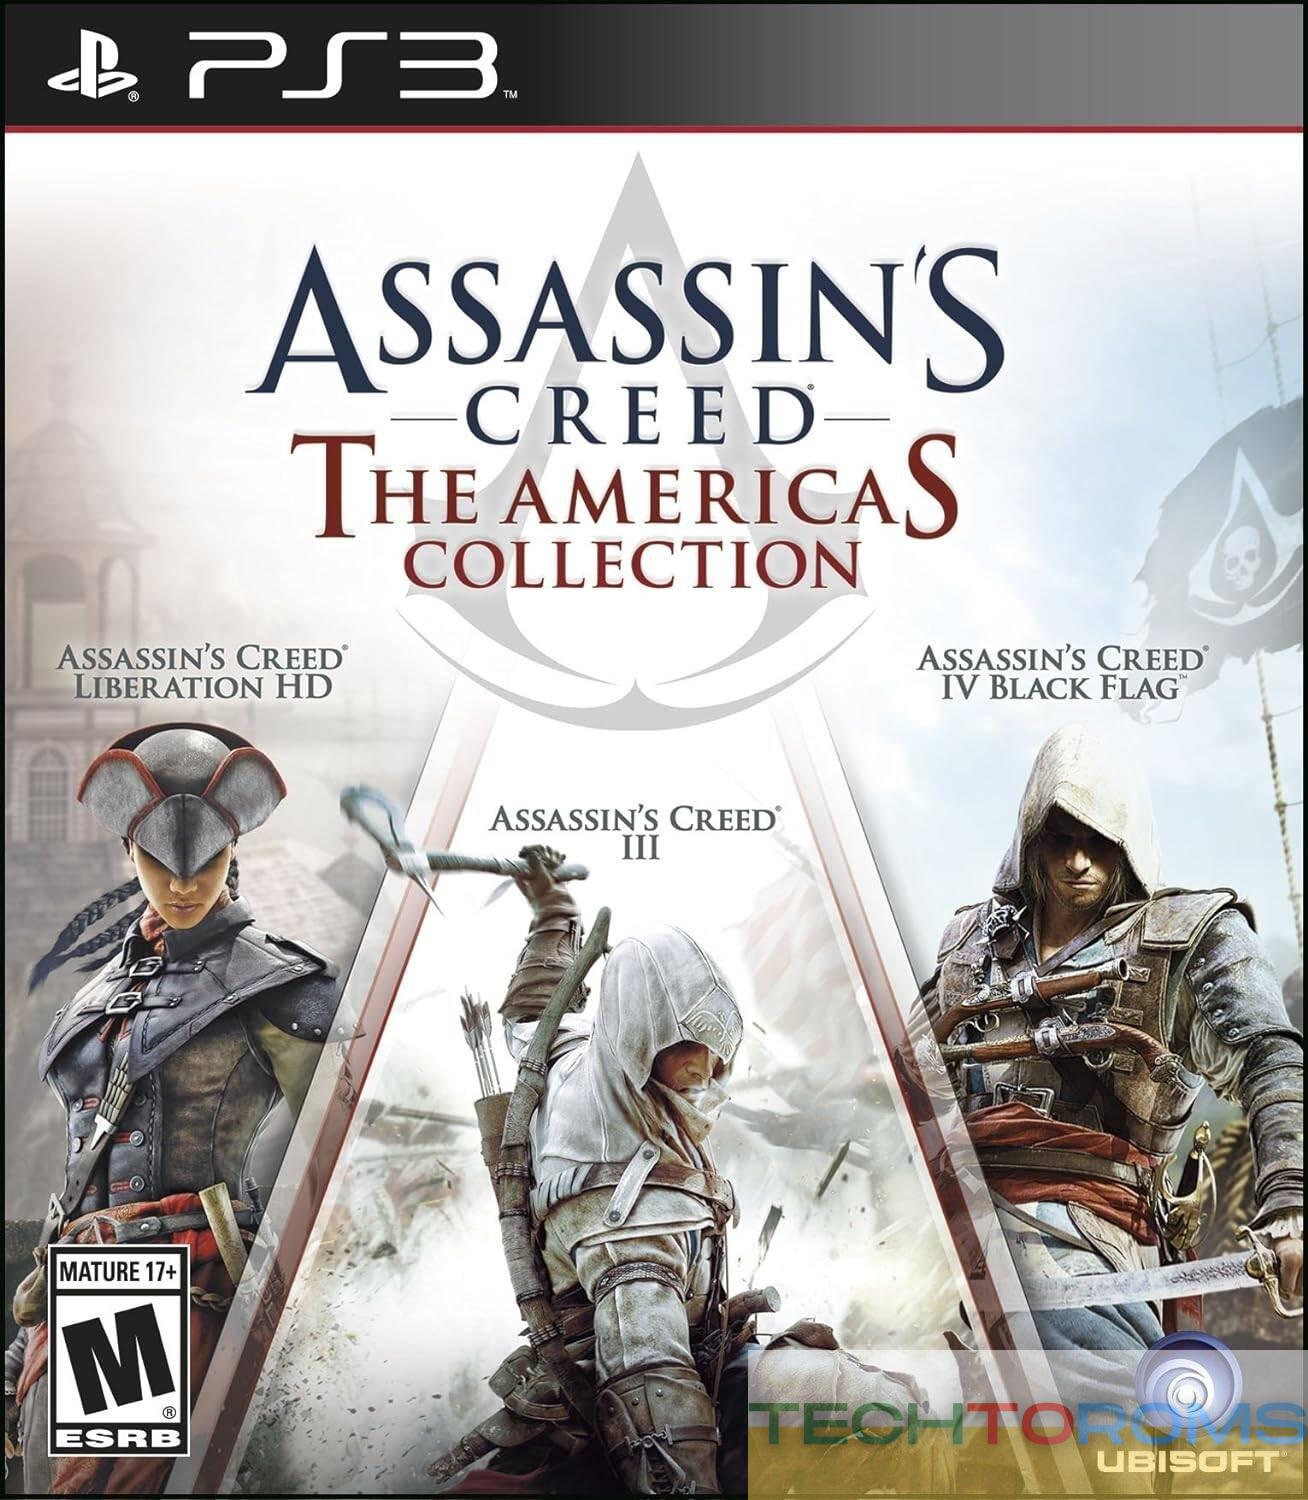 Assassin's Creed: La Collezione delle Americhe